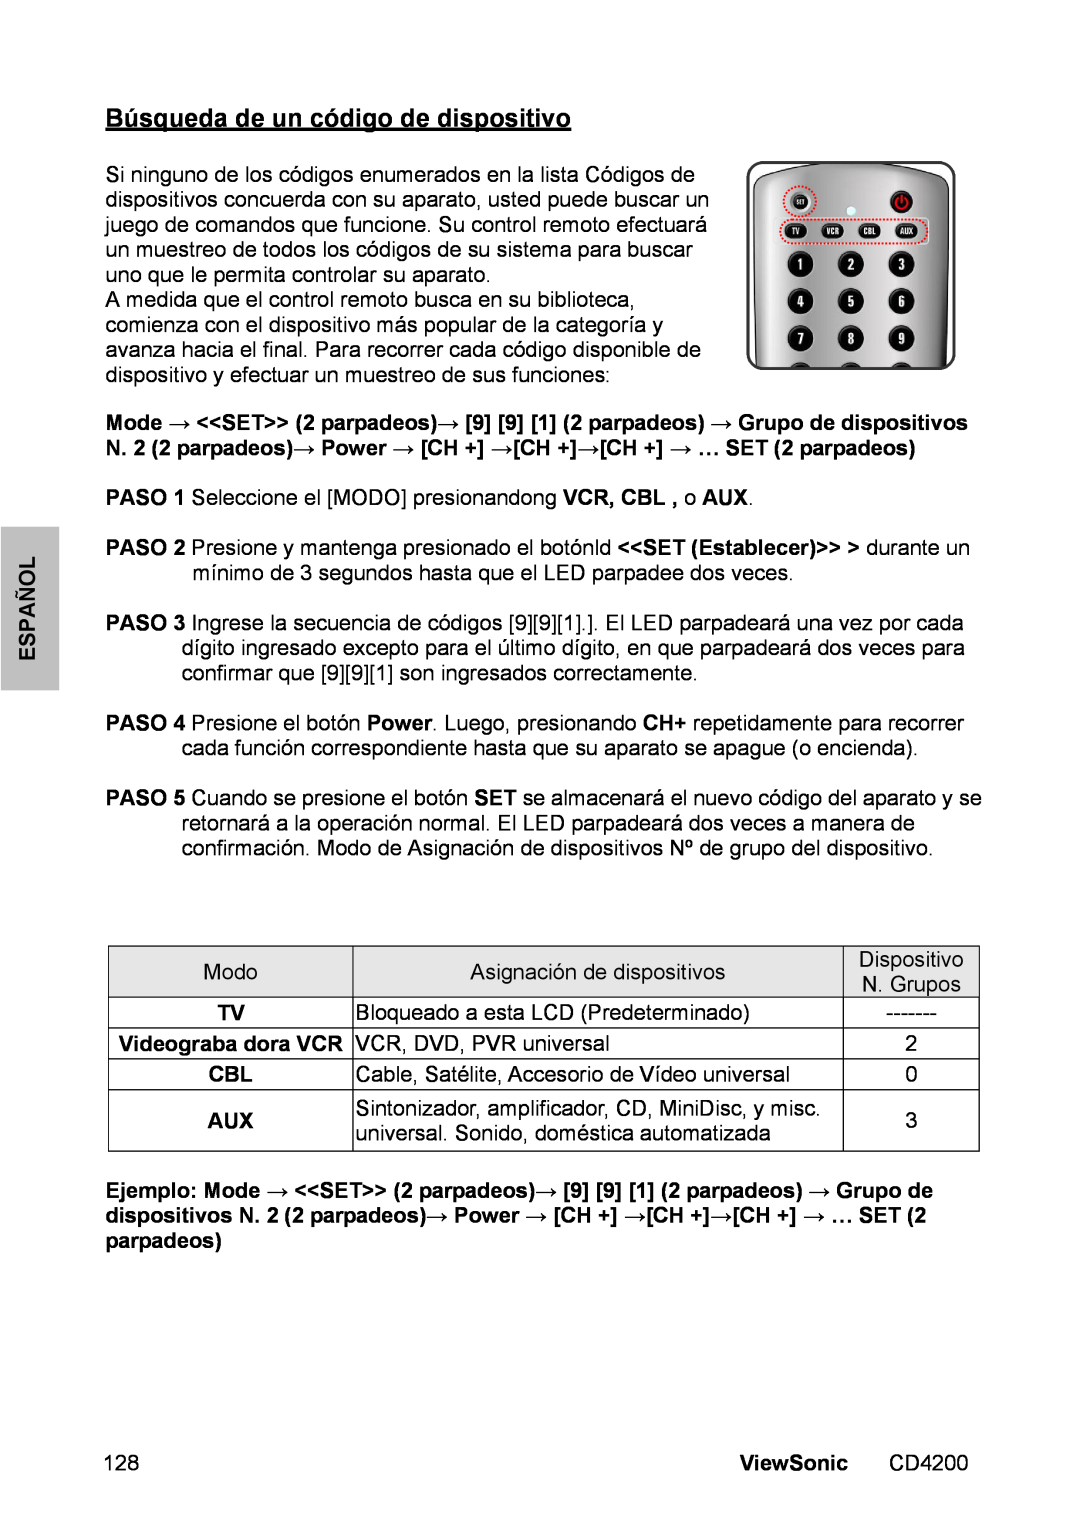 ViewSonic CD4200 manual Búsqueda de un código de dispositivo, Español, ViewSonic 